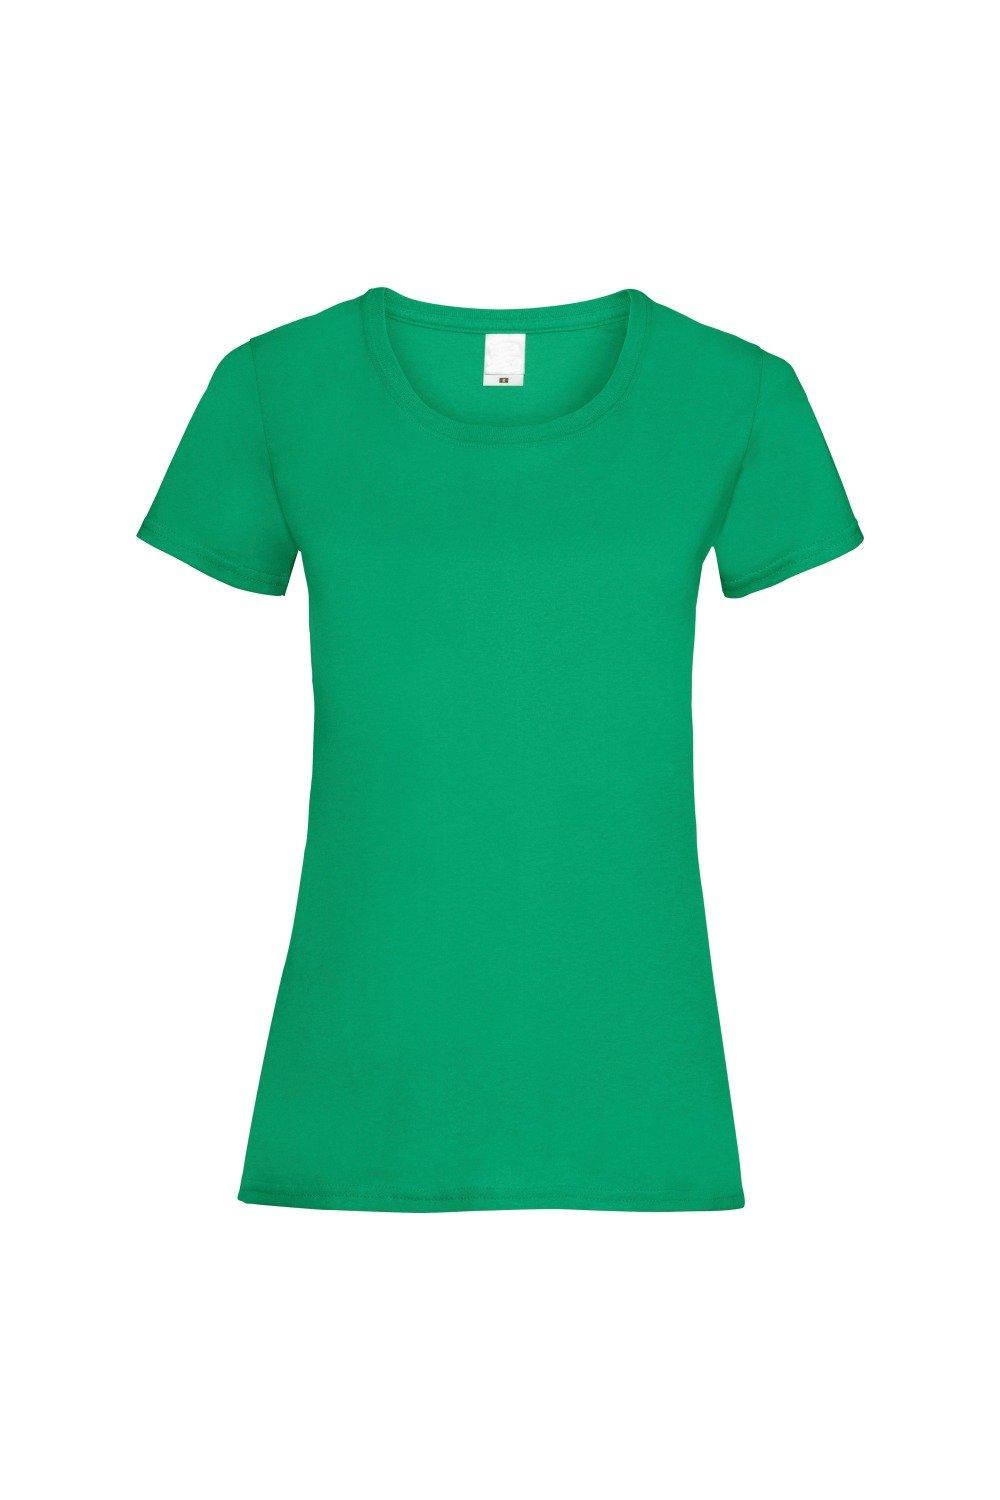 Повседневная футболка с короткими рукавами Value Universal Textiles, зеленый